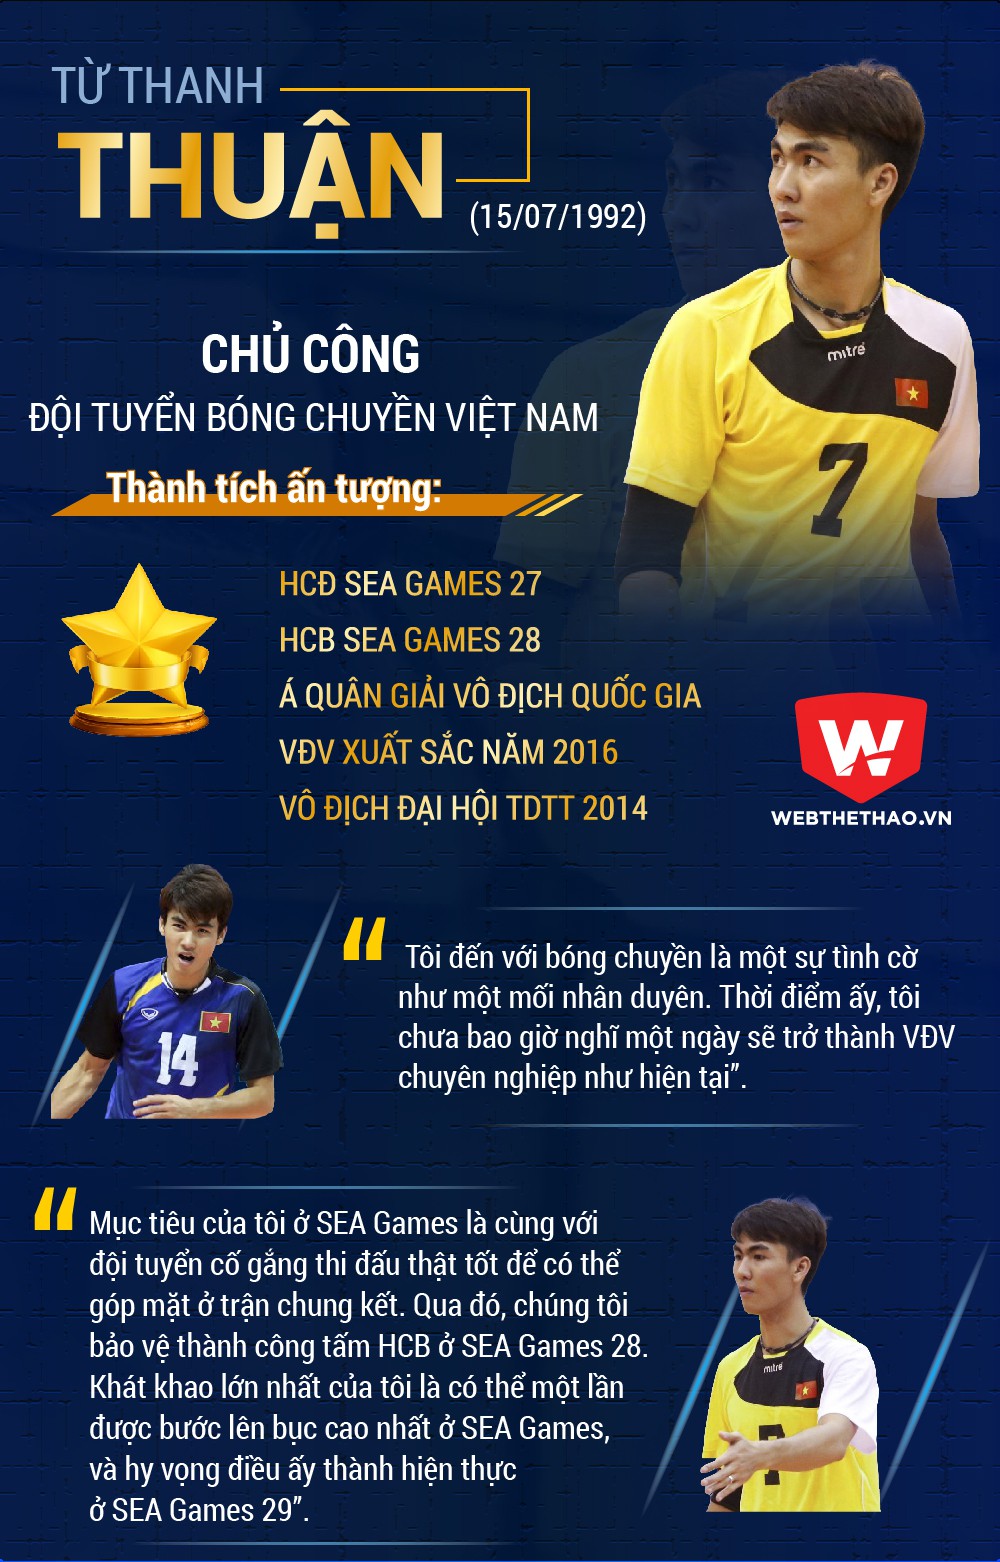 Từ Thanh Thuận là chủ công xuất sắc của tuyển bóng chuyền VN. Đồ họa: Bá Đức